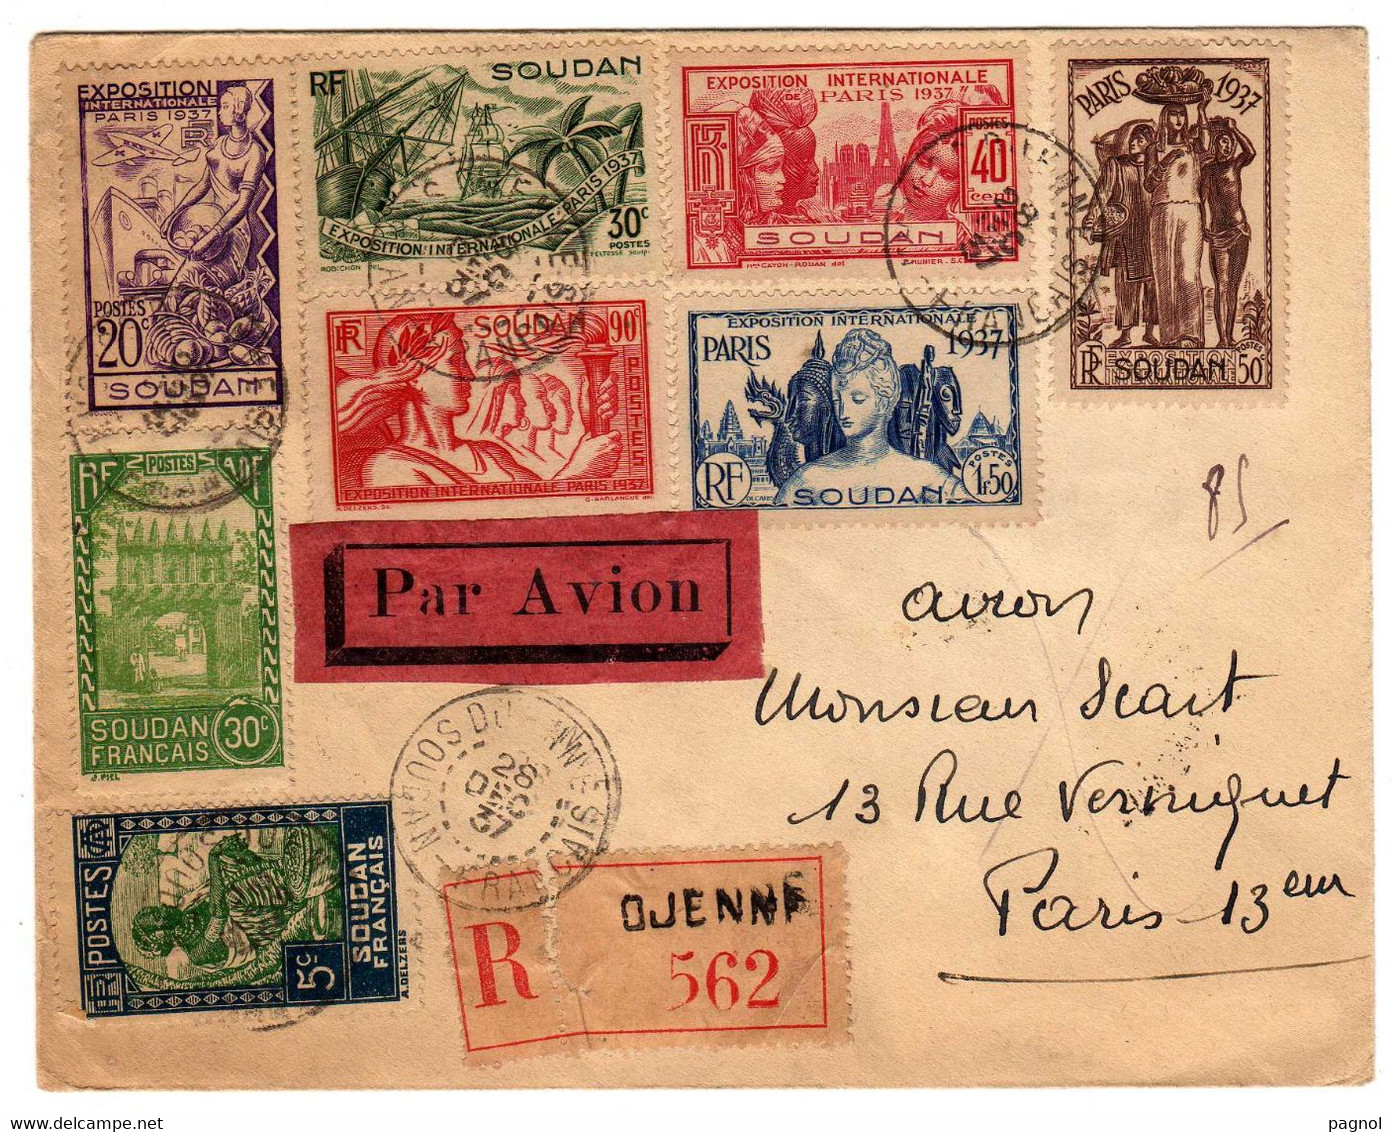 Soudan : Exposition Internationale Paris 1937 : Lettre Rec. Par Avion - Briefe U. Dokumente